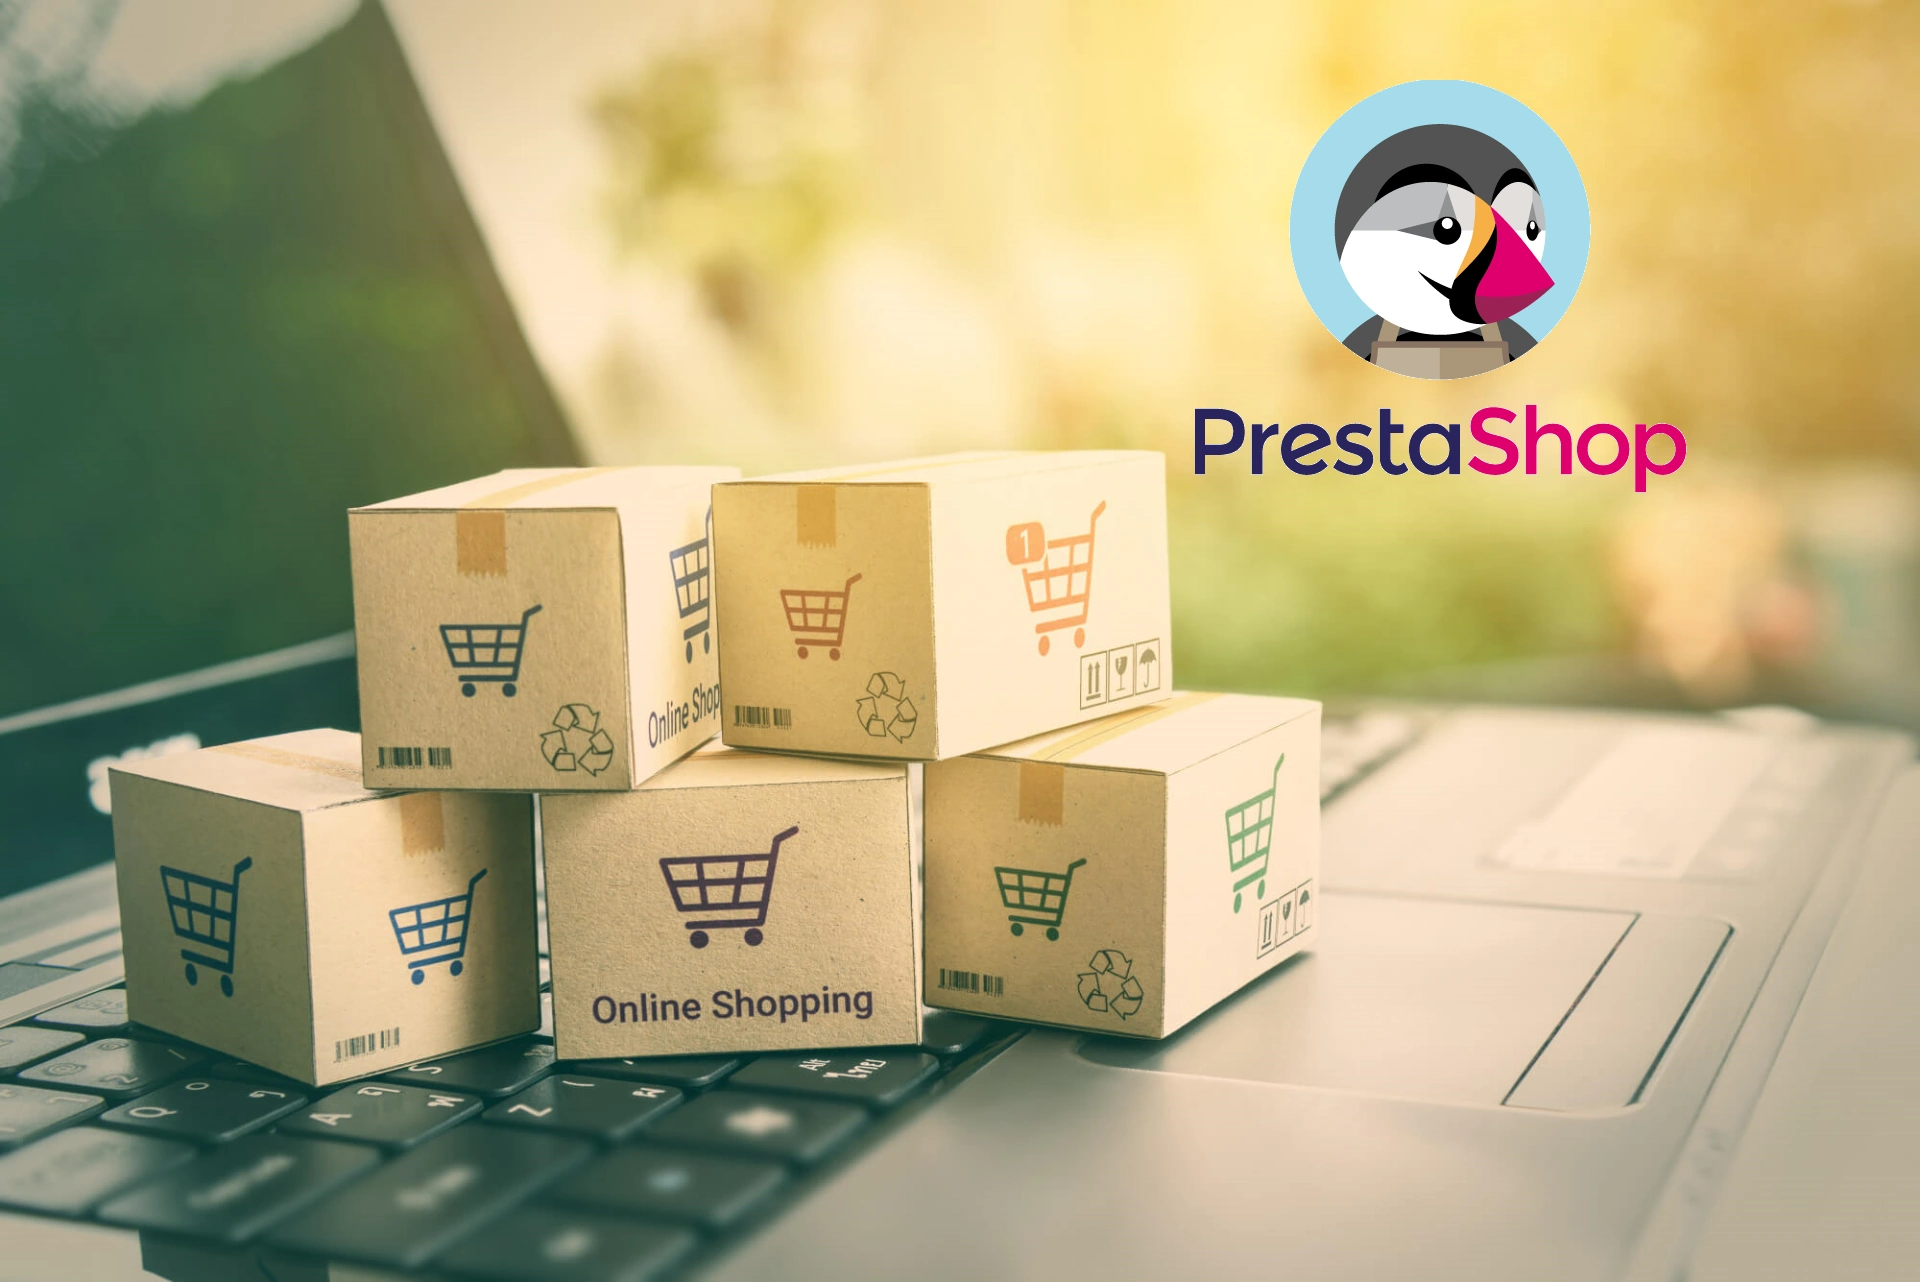 OnlineShop mit PrestaShop erstellen lassen